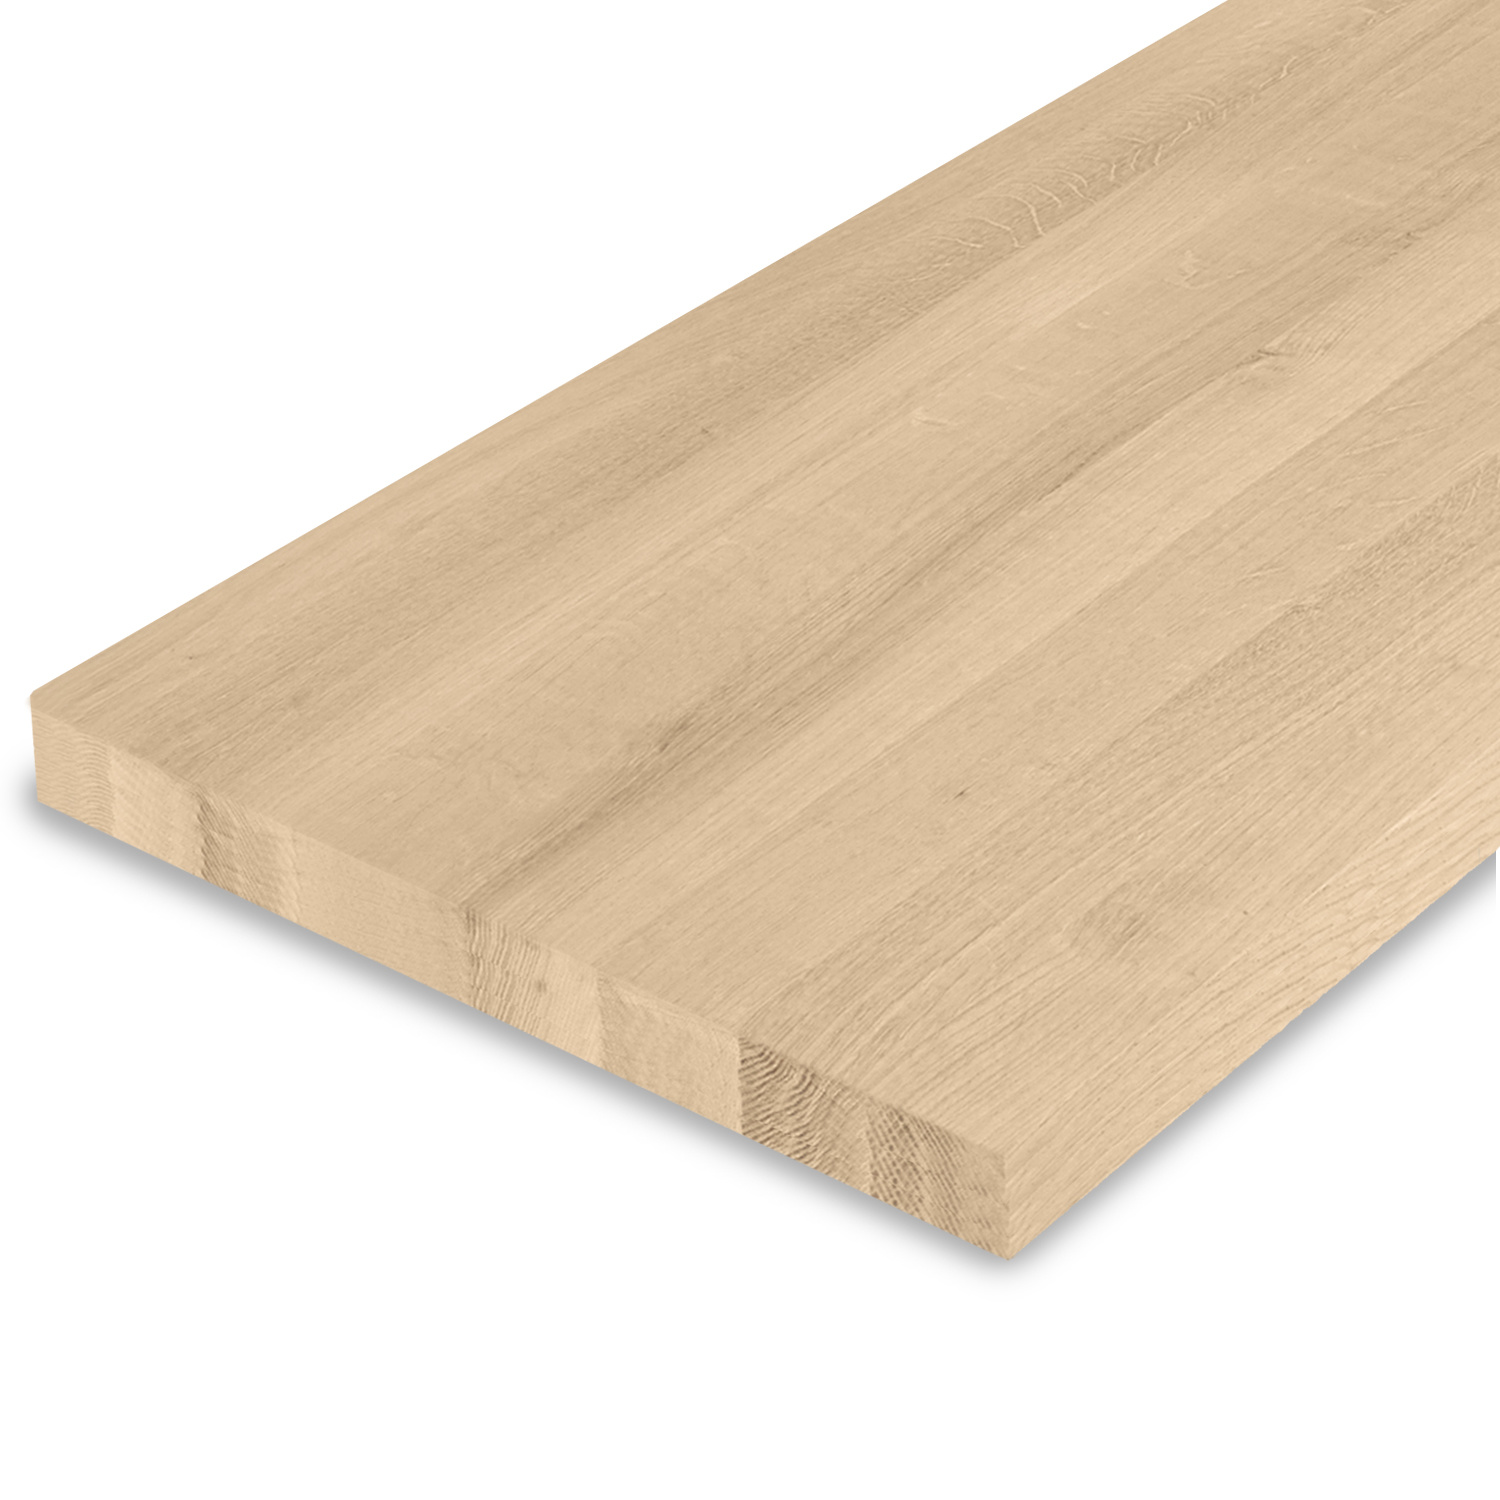  Leimholzplatte Eiche nach Maß - 4 cm dick - Eichenholz A-Qualität- Eiche Massivholzplatte - verleimt & künstlich getrocknet (HF 8-12%) - 15-120x20-350 cm